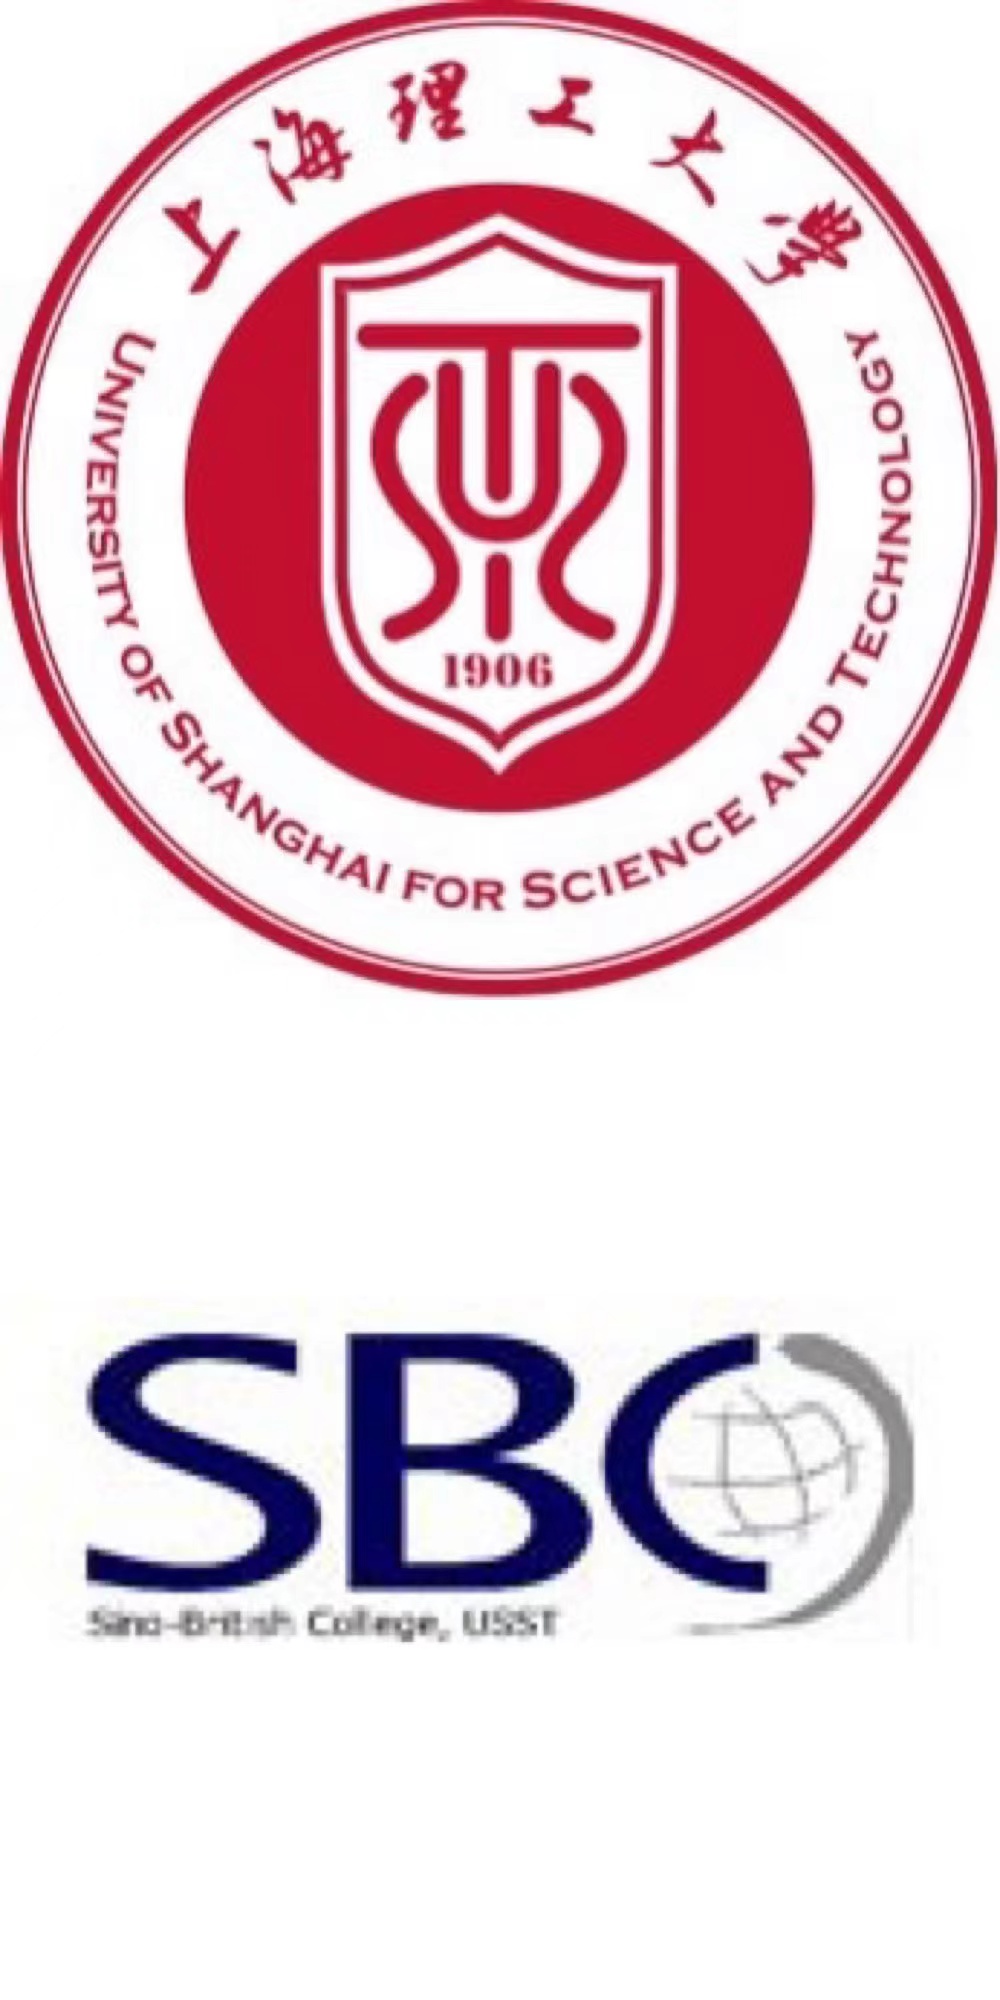 The Sino-British College,USST